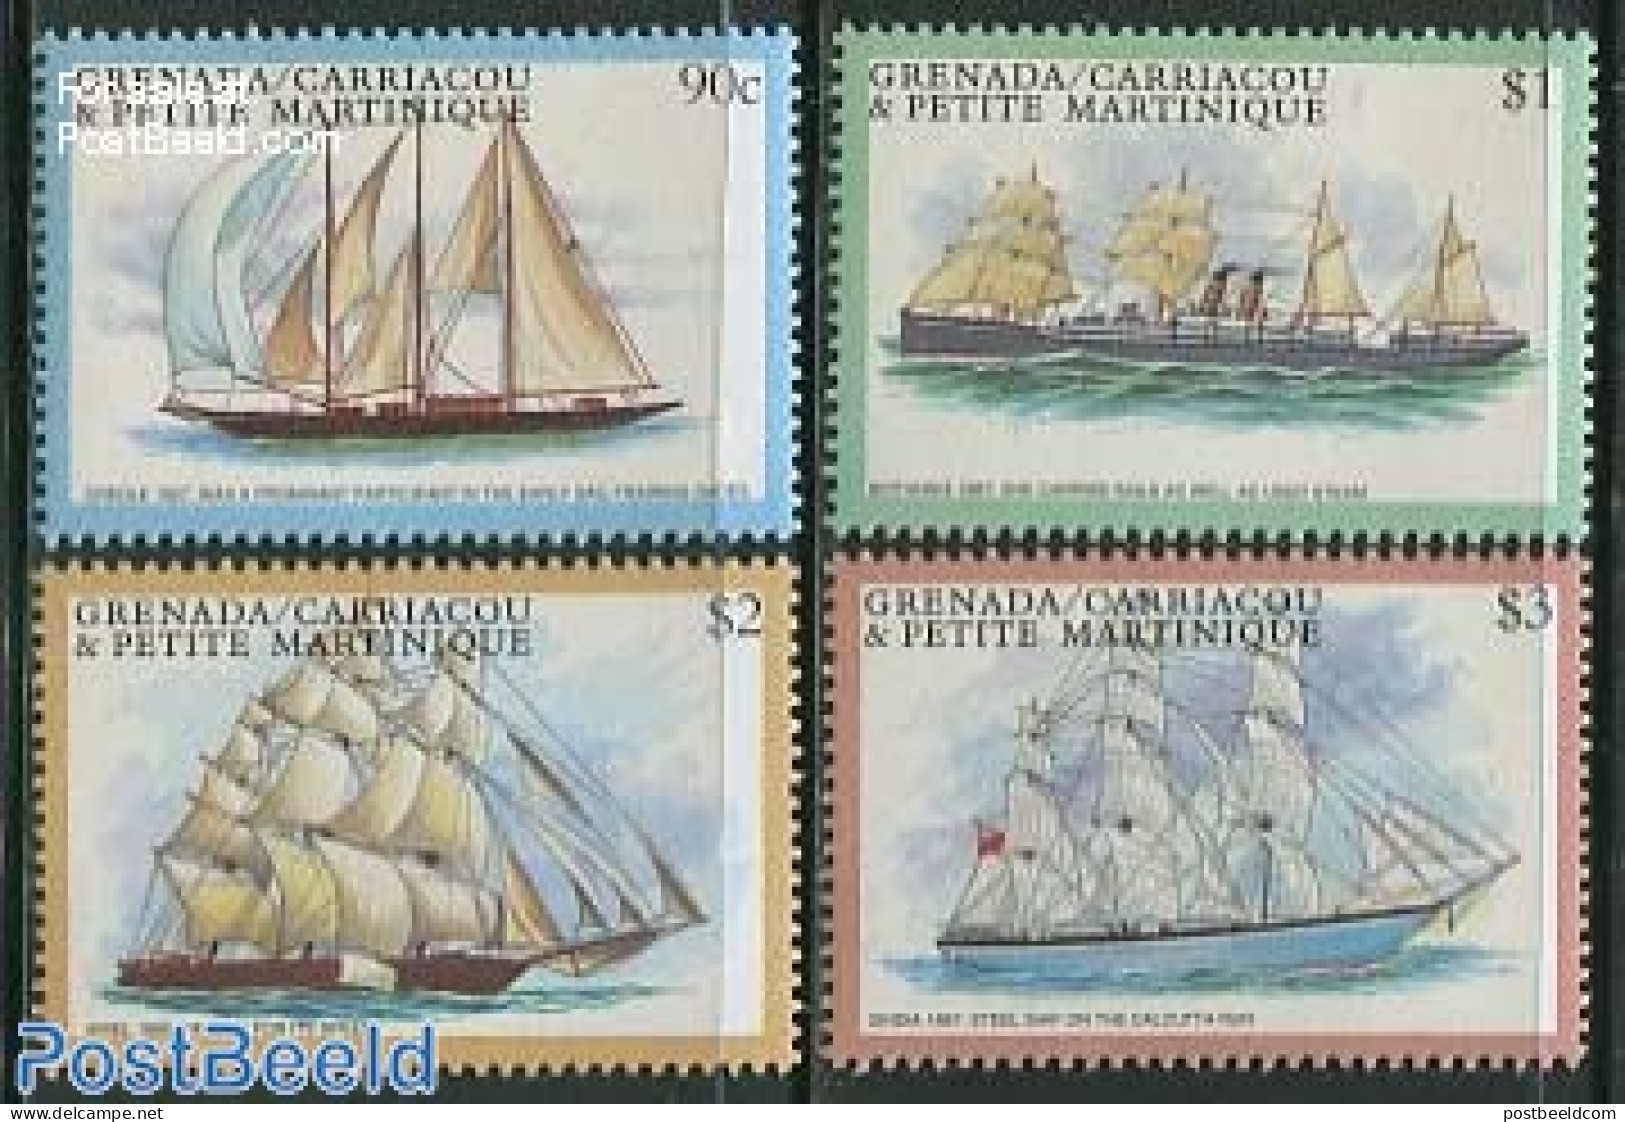 Grenada Grenadines 2001 Sailing Ships 4v, Mint NH, Transport - Ships And Boats - Bateaux